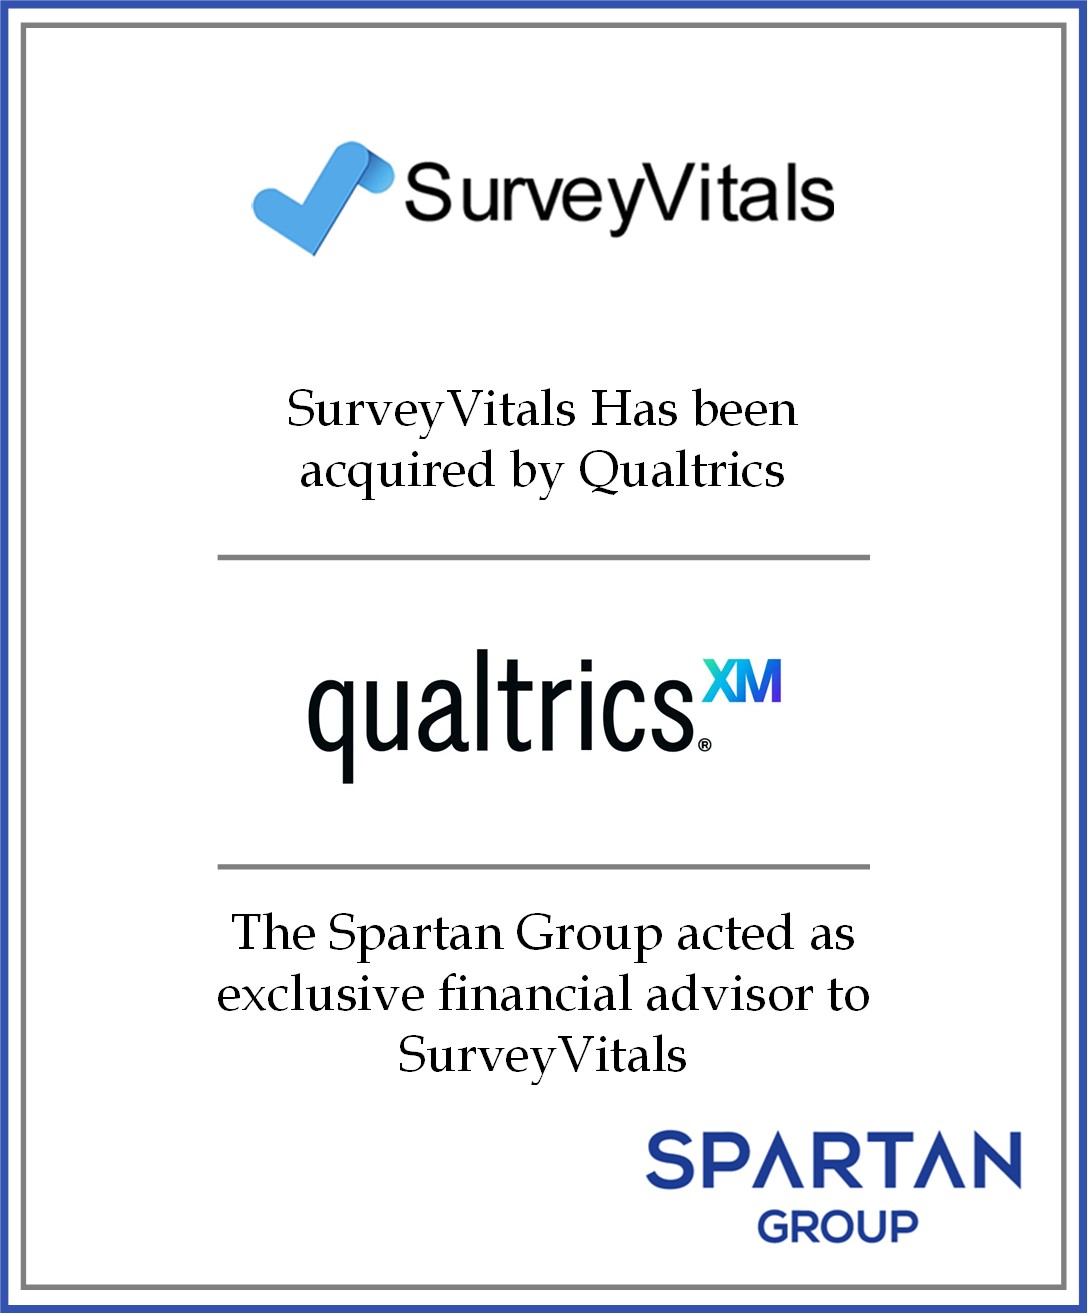 SurveyVitals